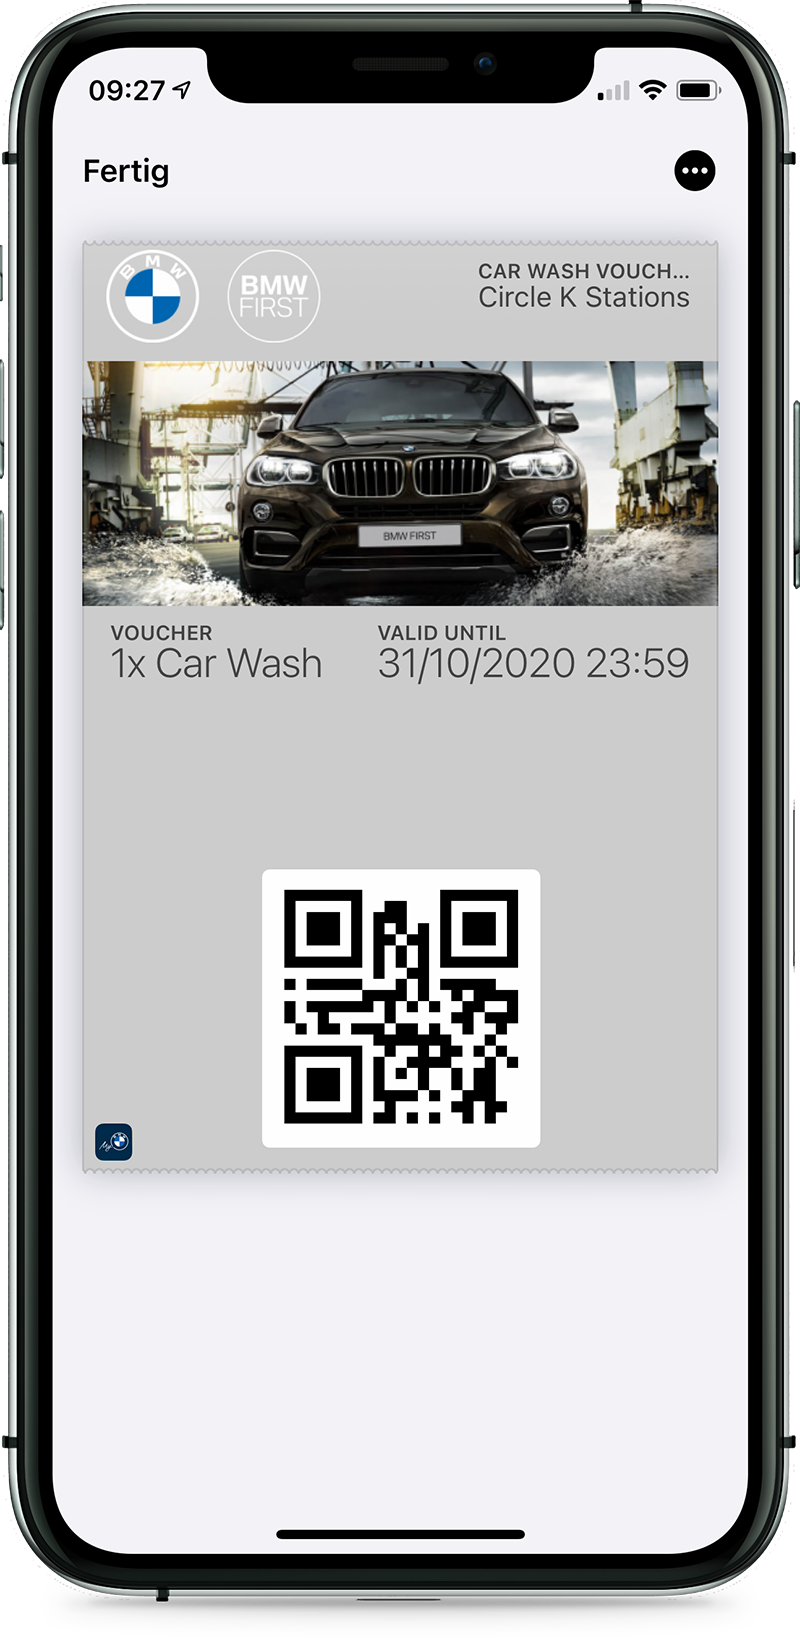 BMW First - Car wash voucher